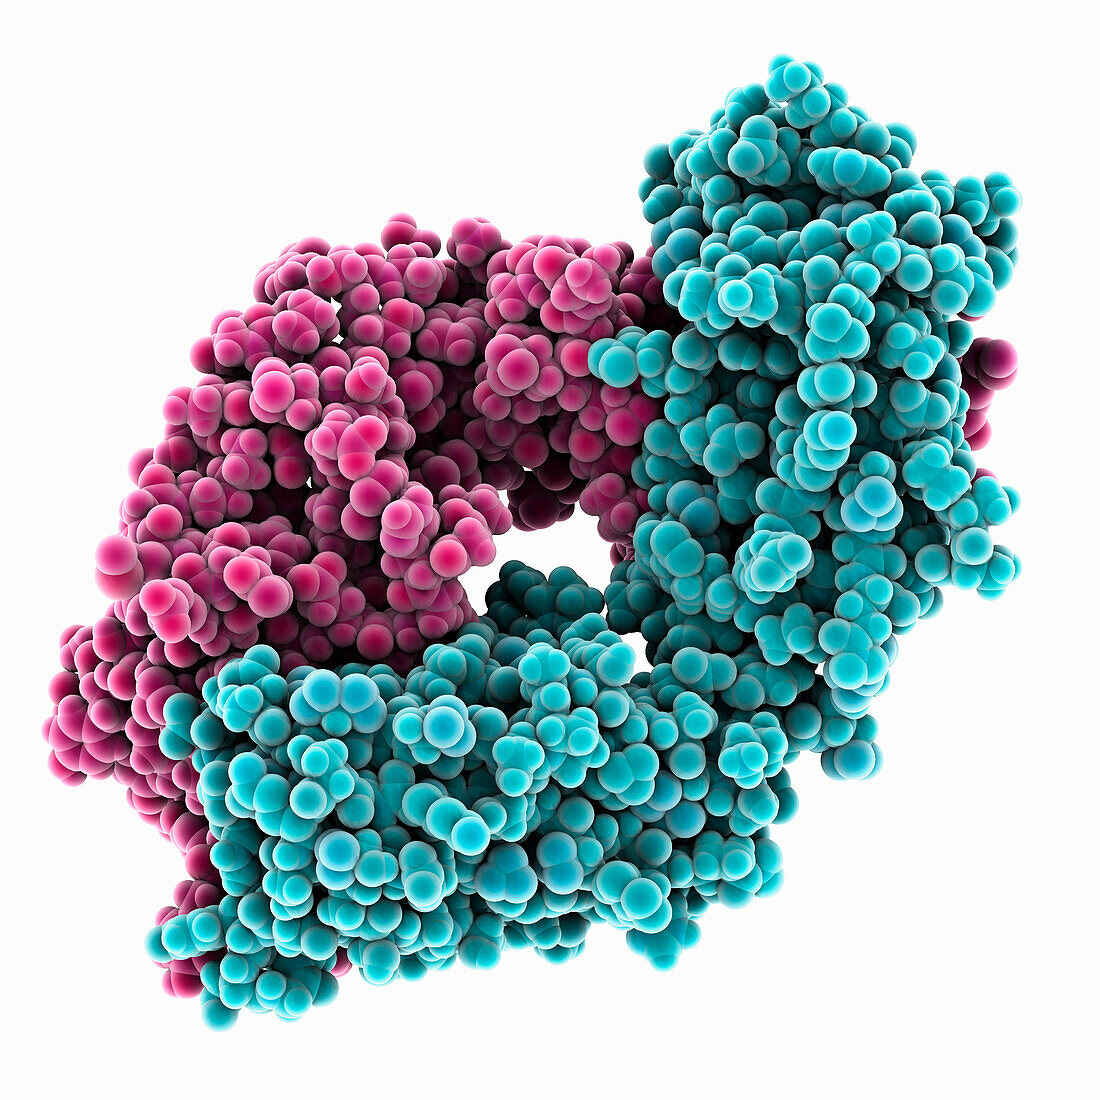 Anti-HIV antibody CG10, illustration